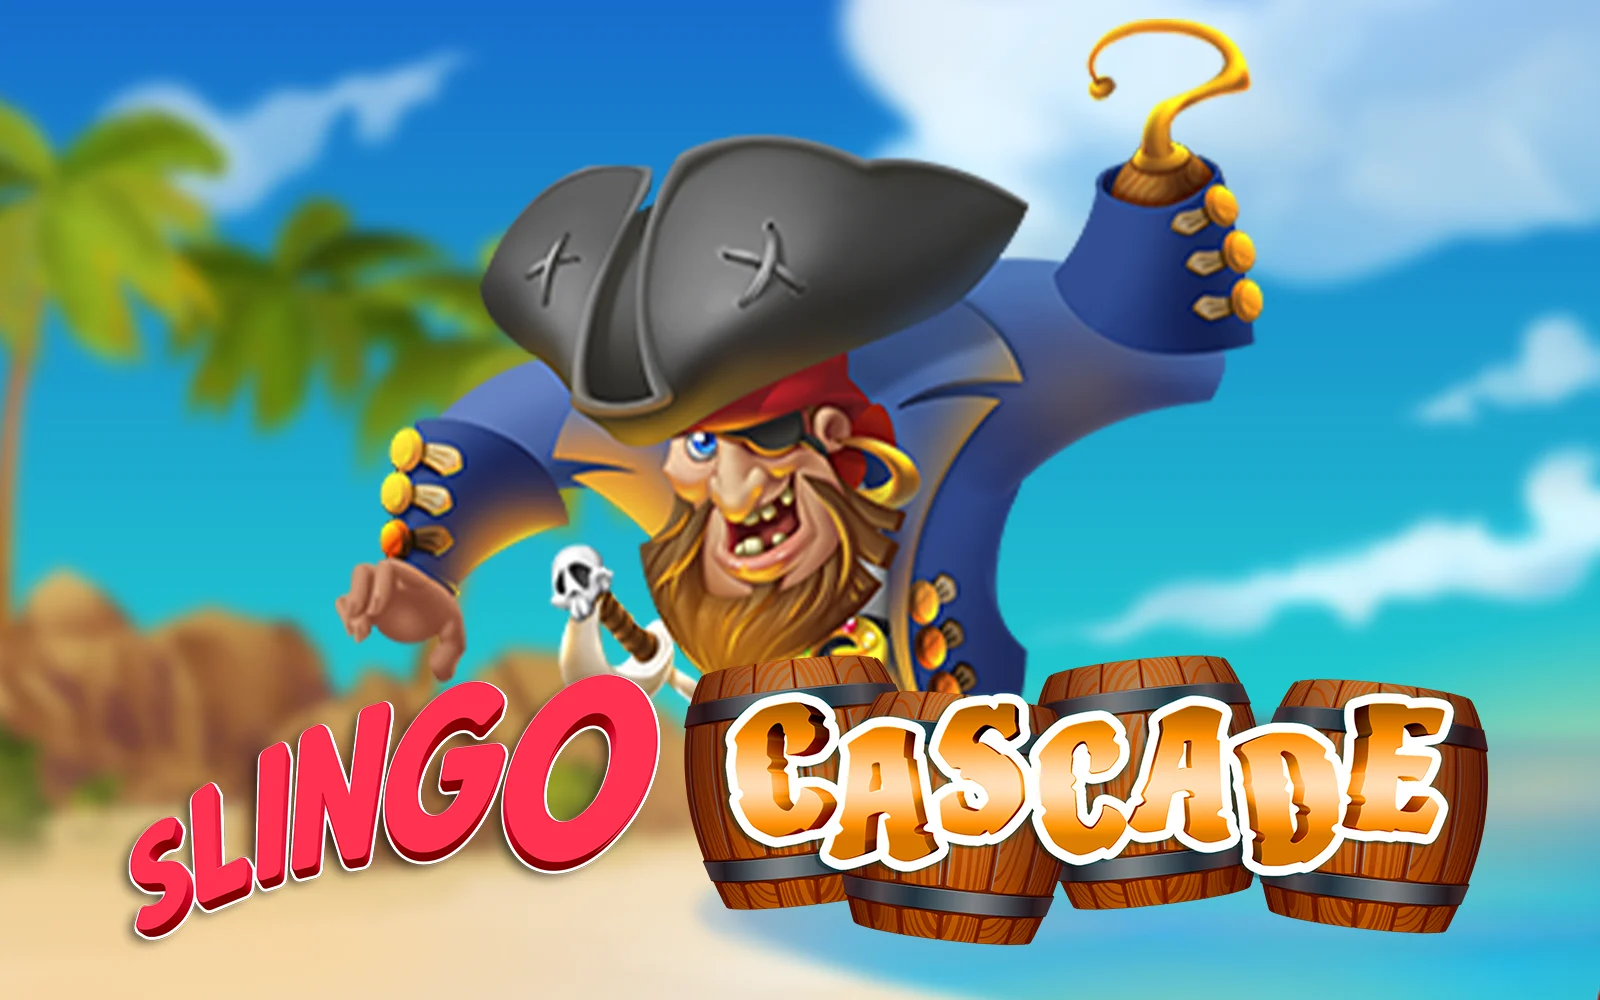 Παίξτε Slingo Cascade στο online καζίνο Starcasino.be